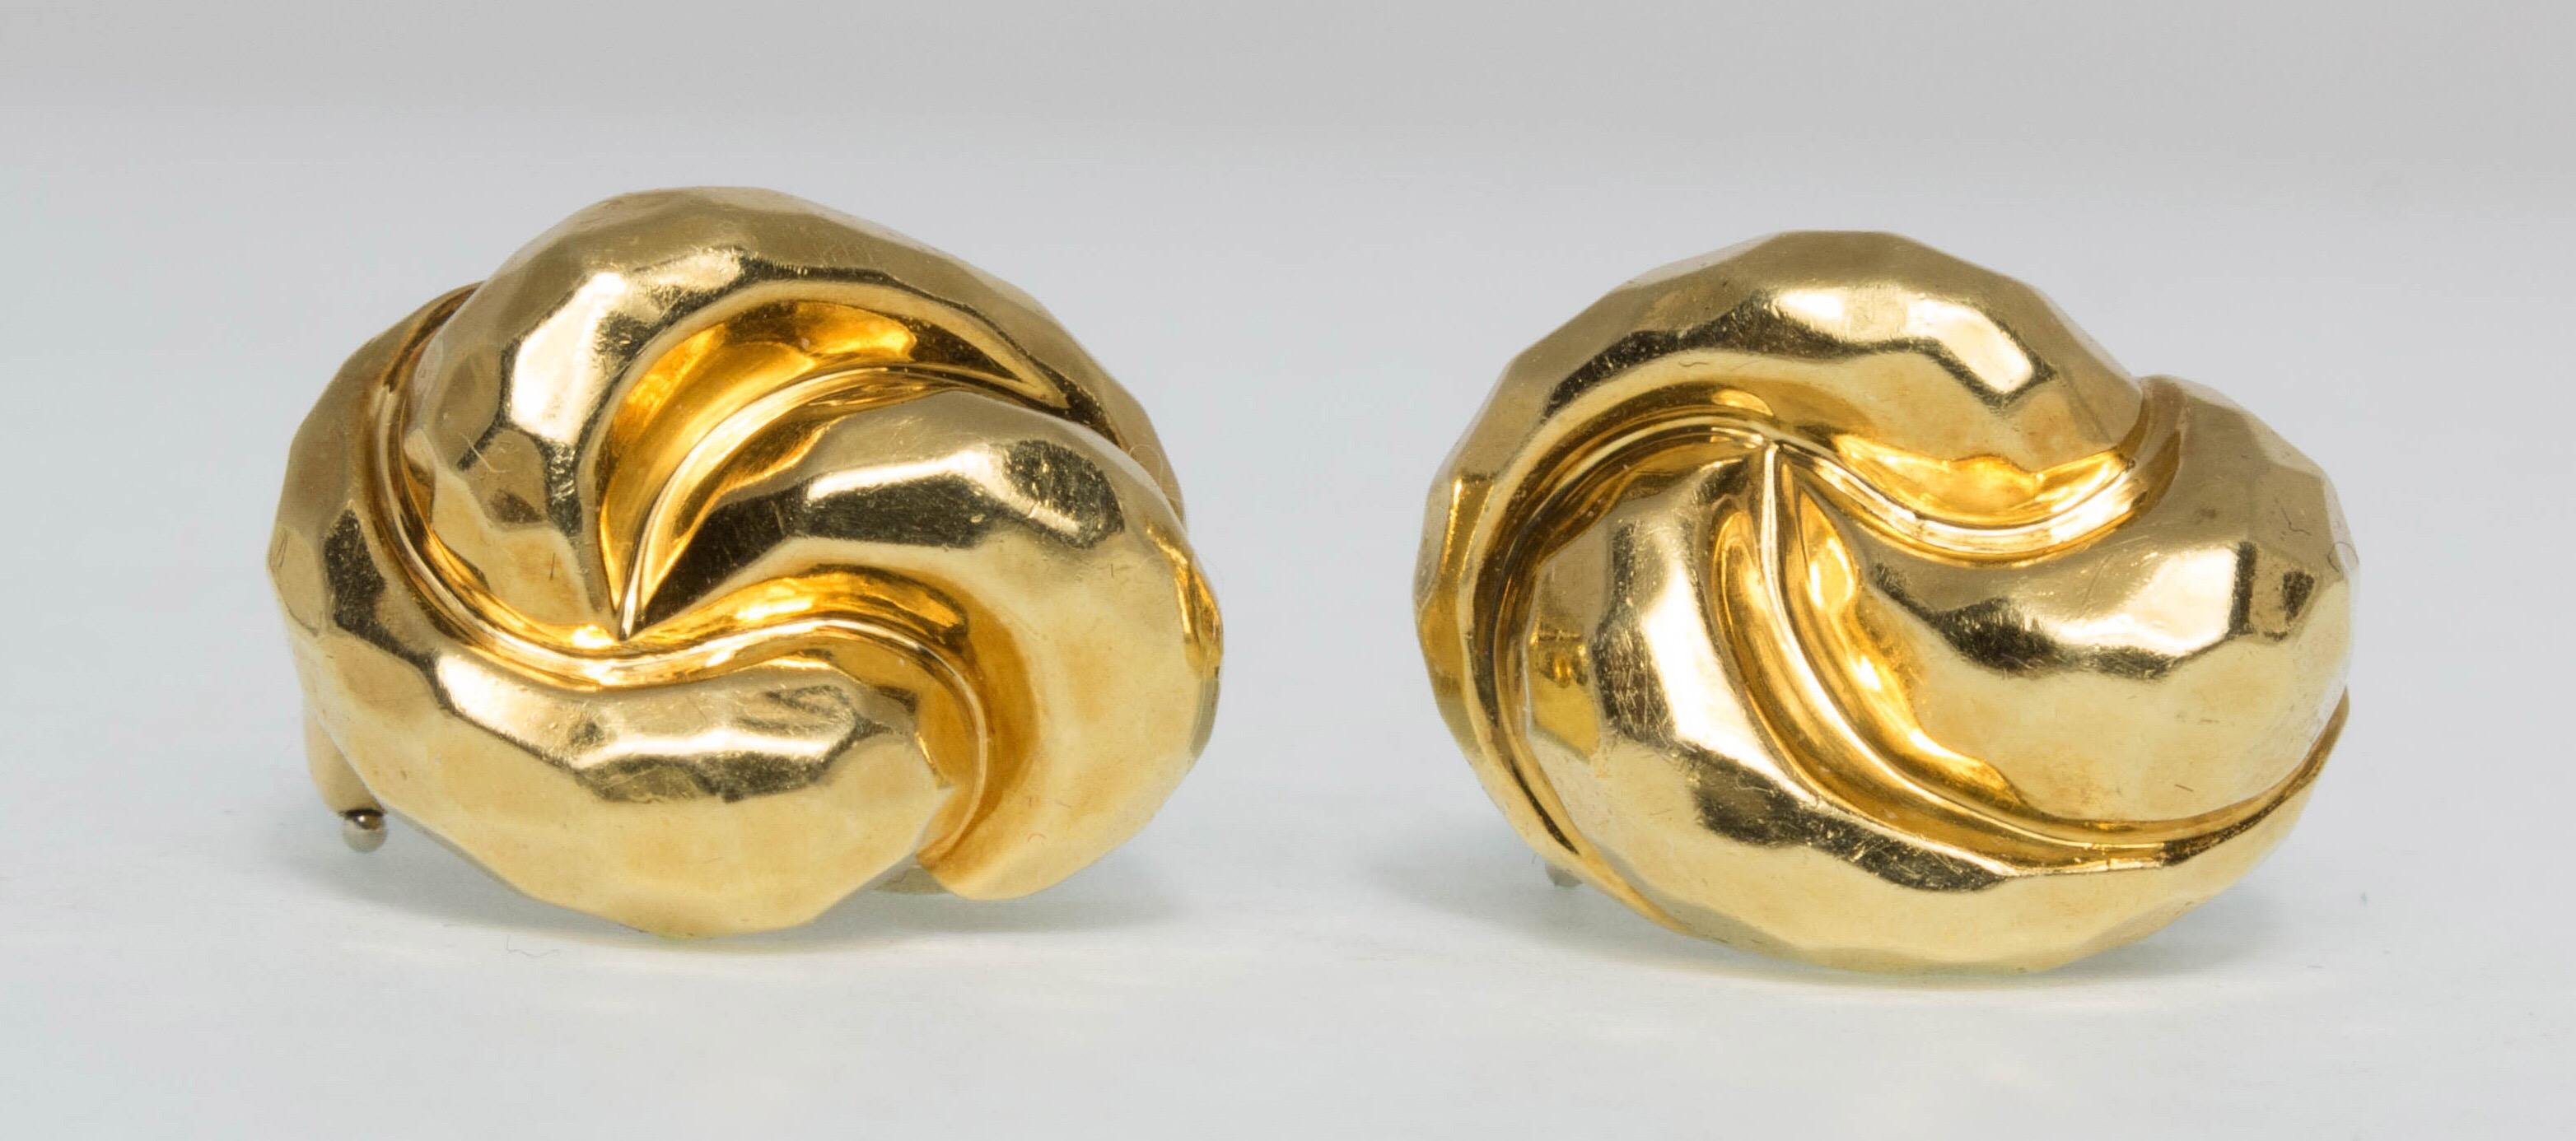 Ein einfaches, elegantes und leicht zu tragendes Paar Ohrclips aus handgehämmertem 18 Karat Gelbgold von Henry Dunay. Signiert Dunay, gestempelt 18K, 750. Nummer A5319.
Maße: 0,75